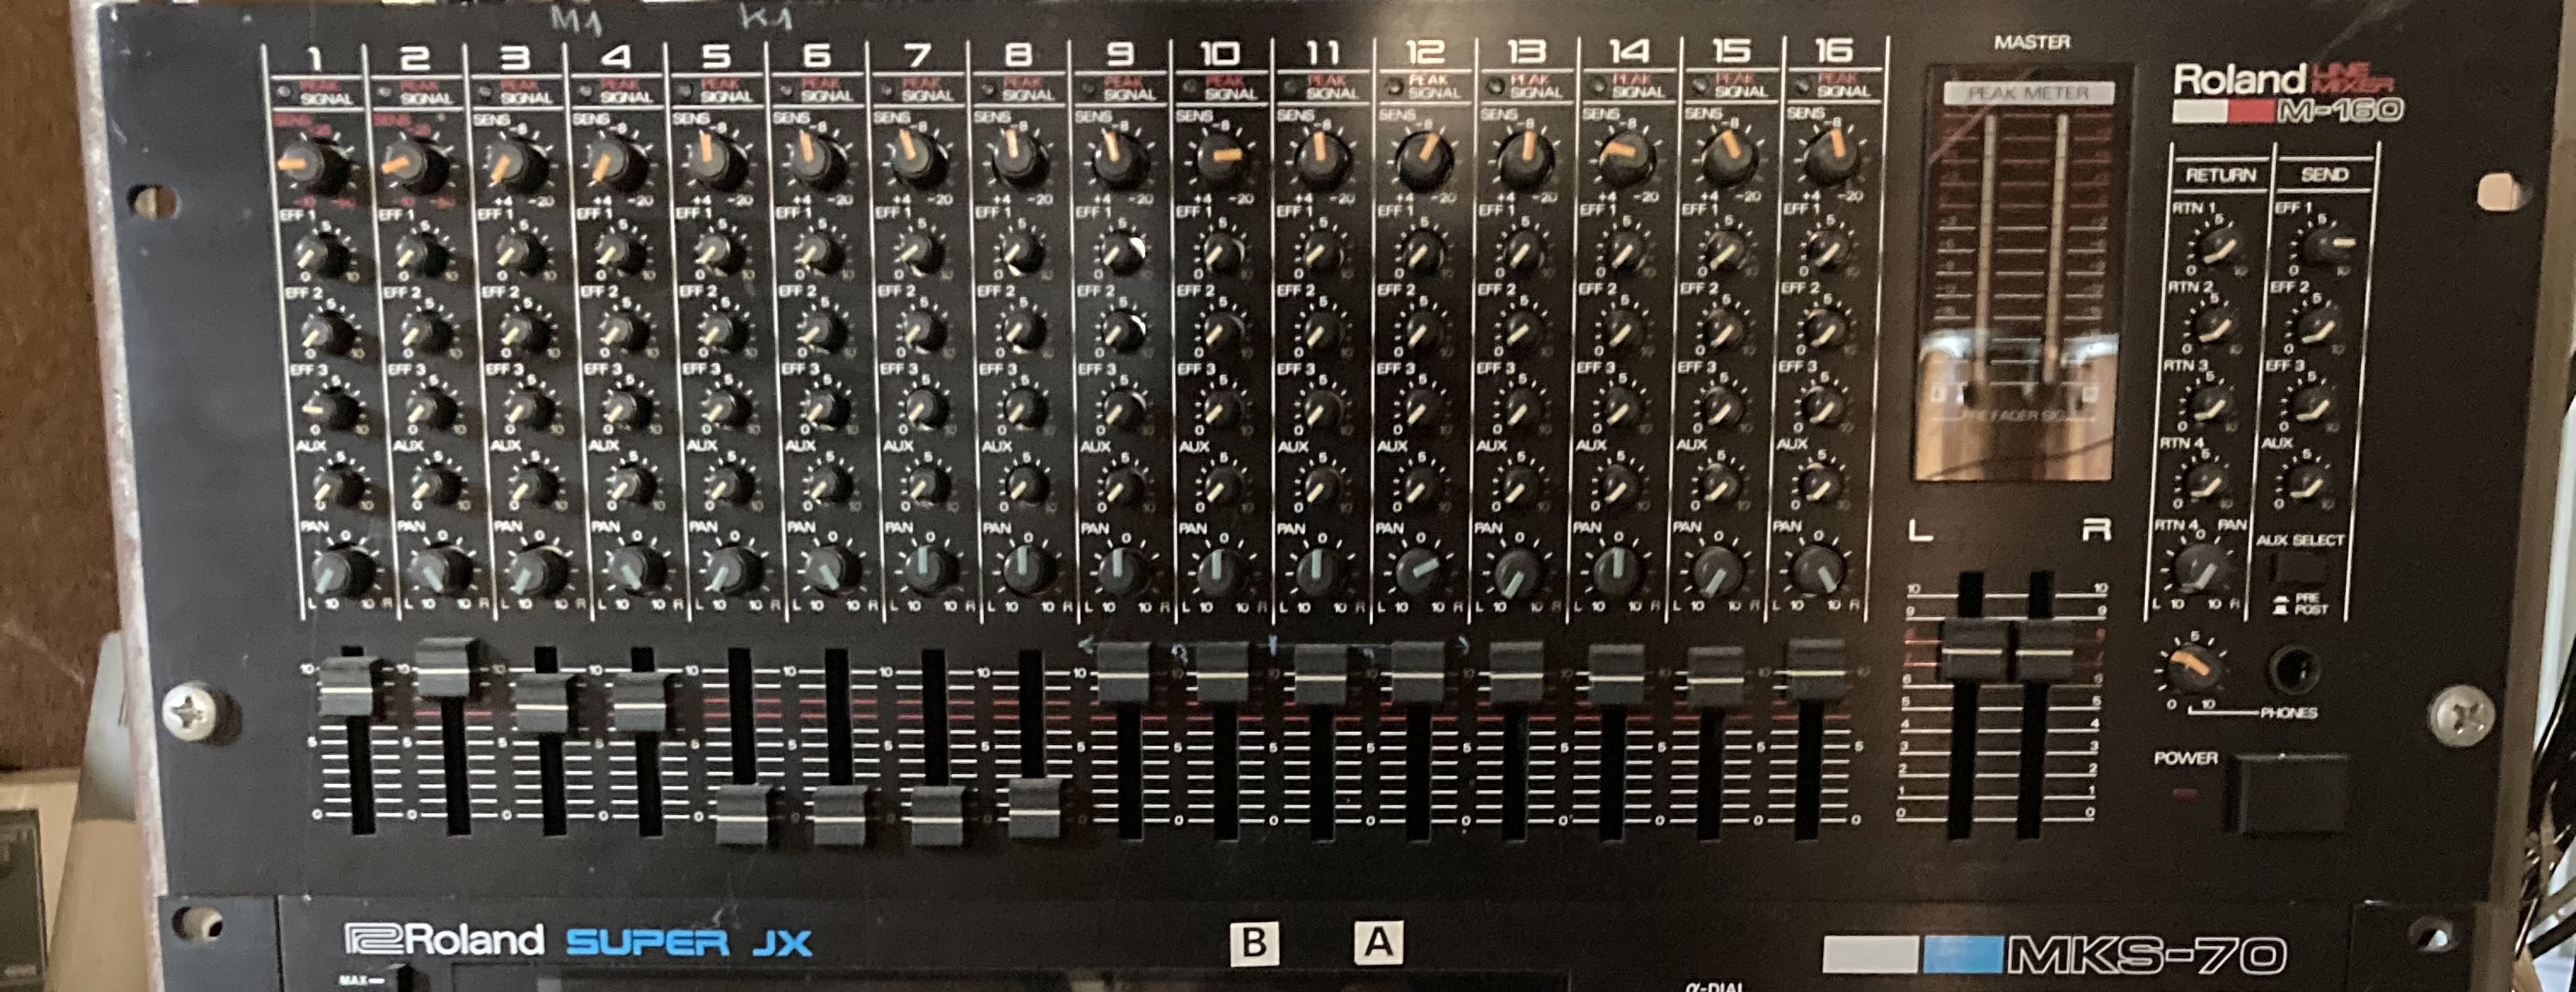 M-160 - Roland M-160 - Audiofanzine